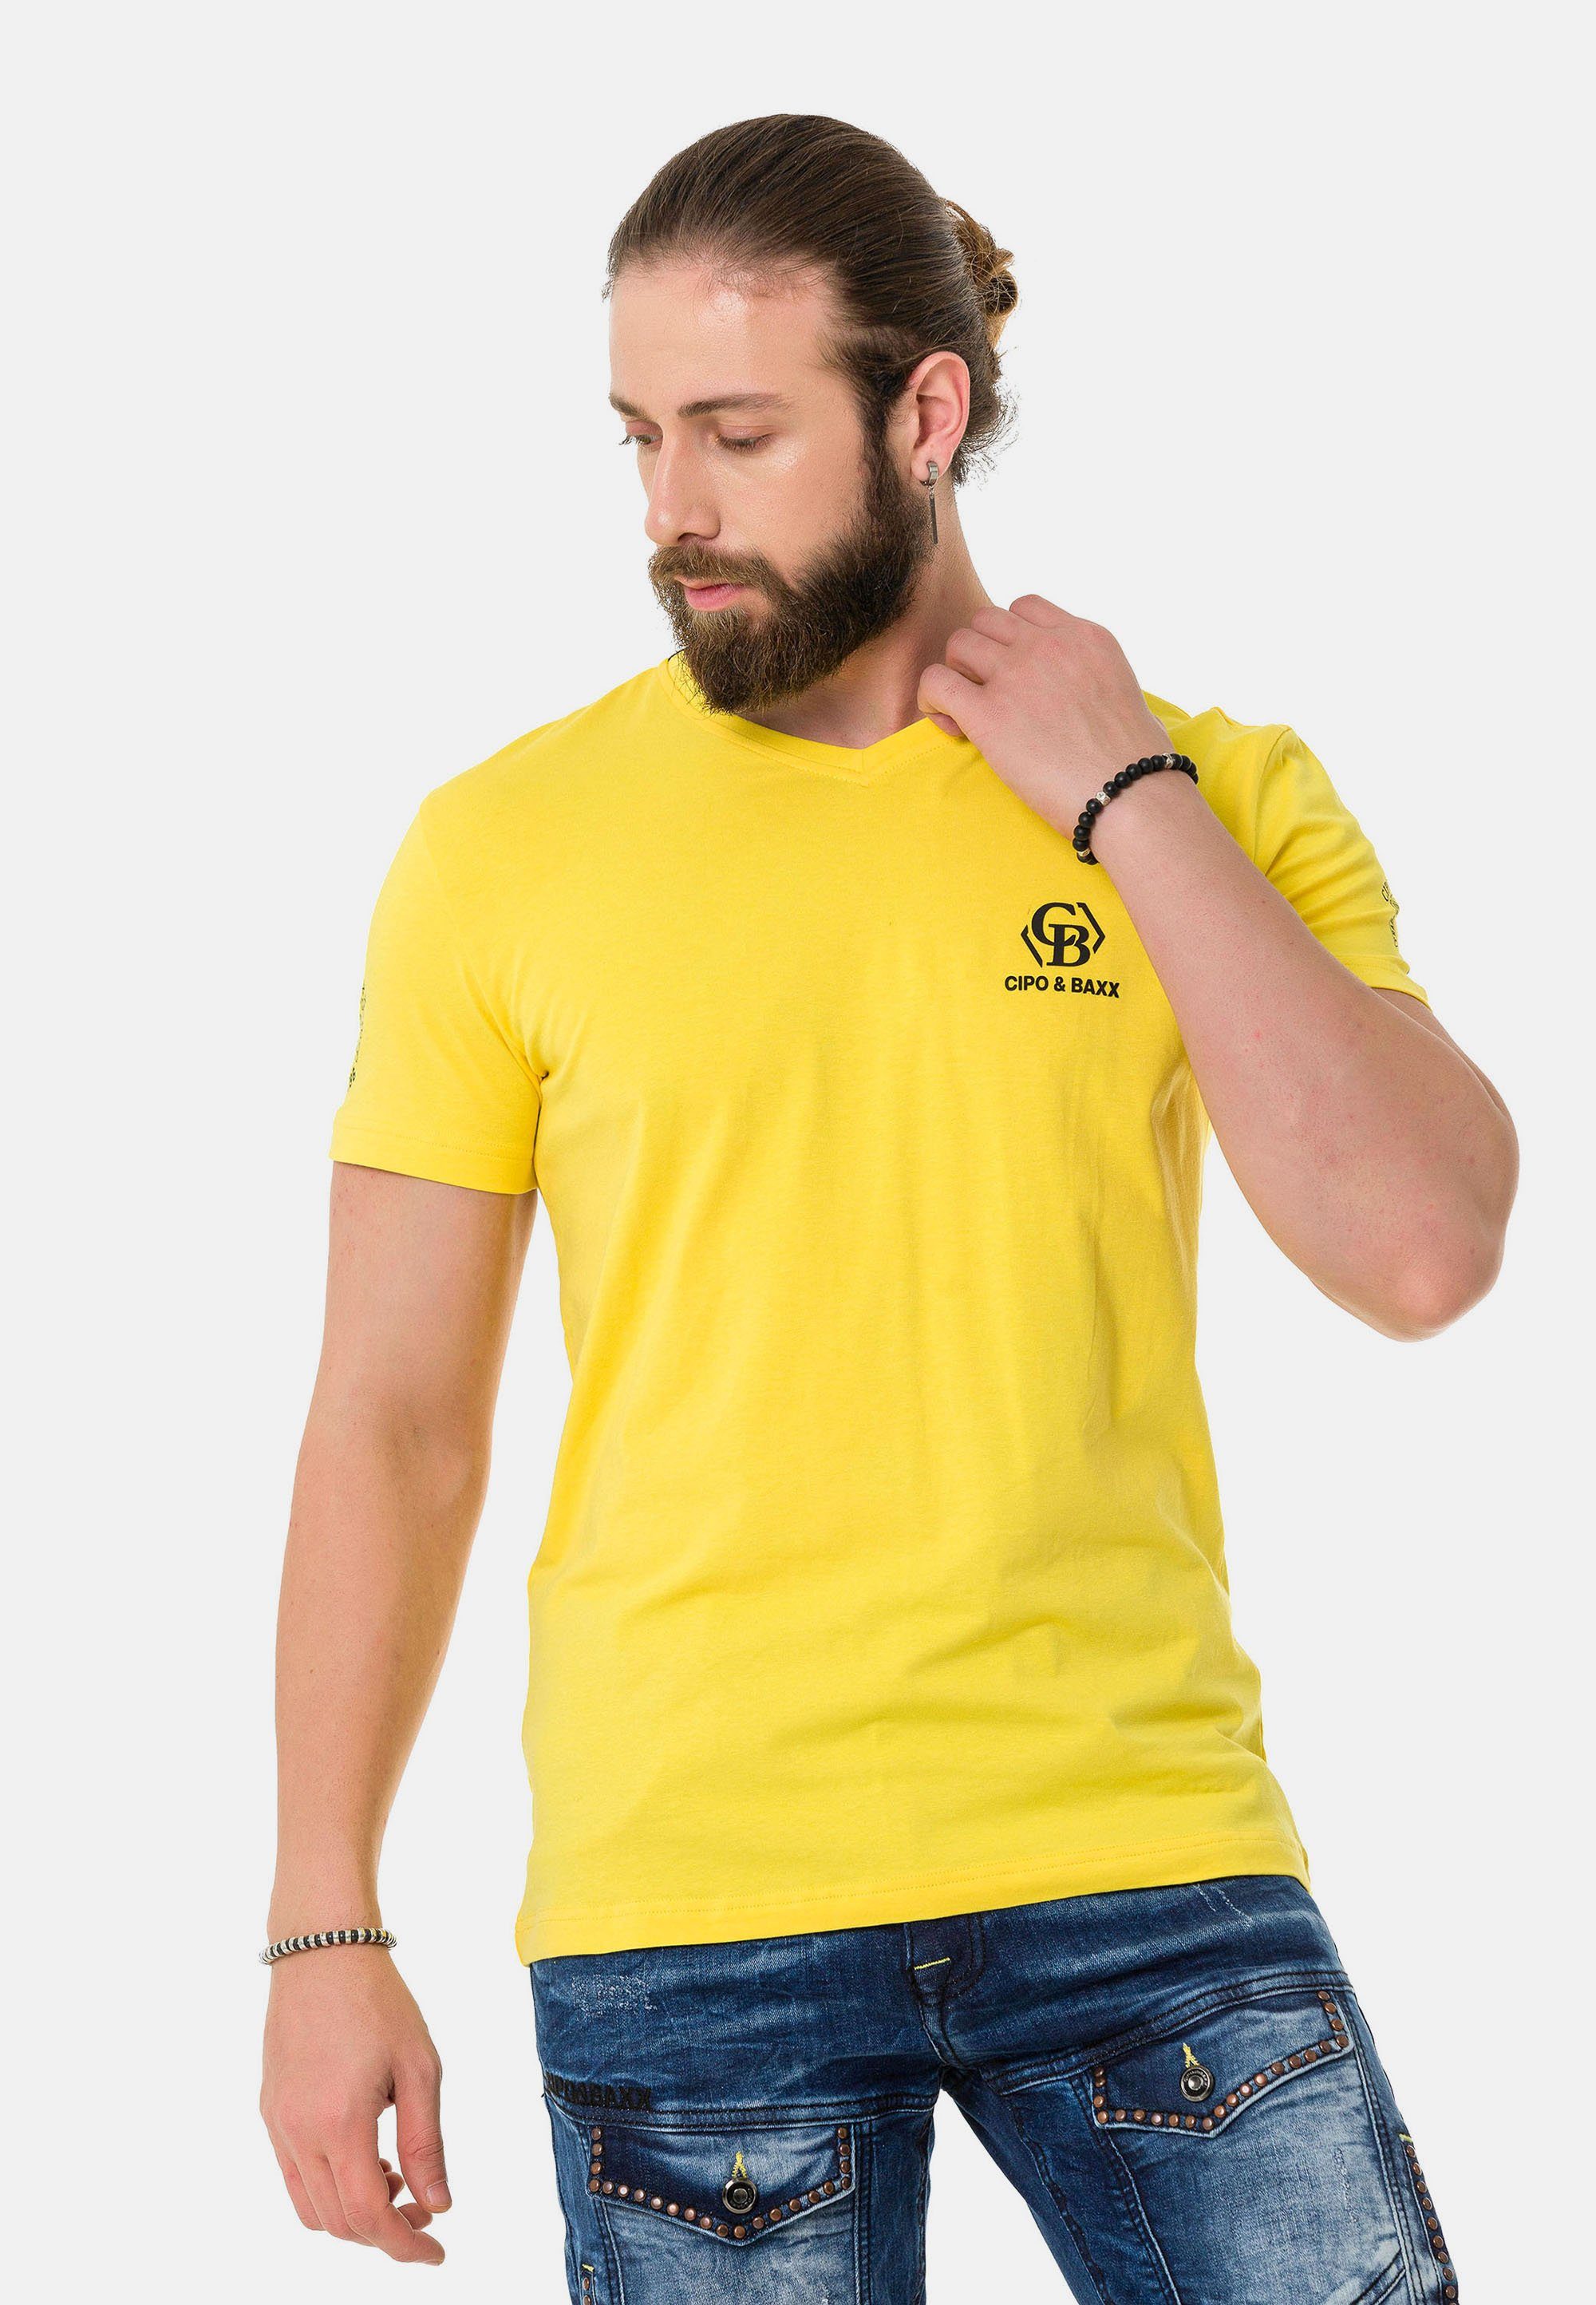 Hergestellt in Japan Cipo & Baxx T-Shirt mit dezenten Markenlogos gelb